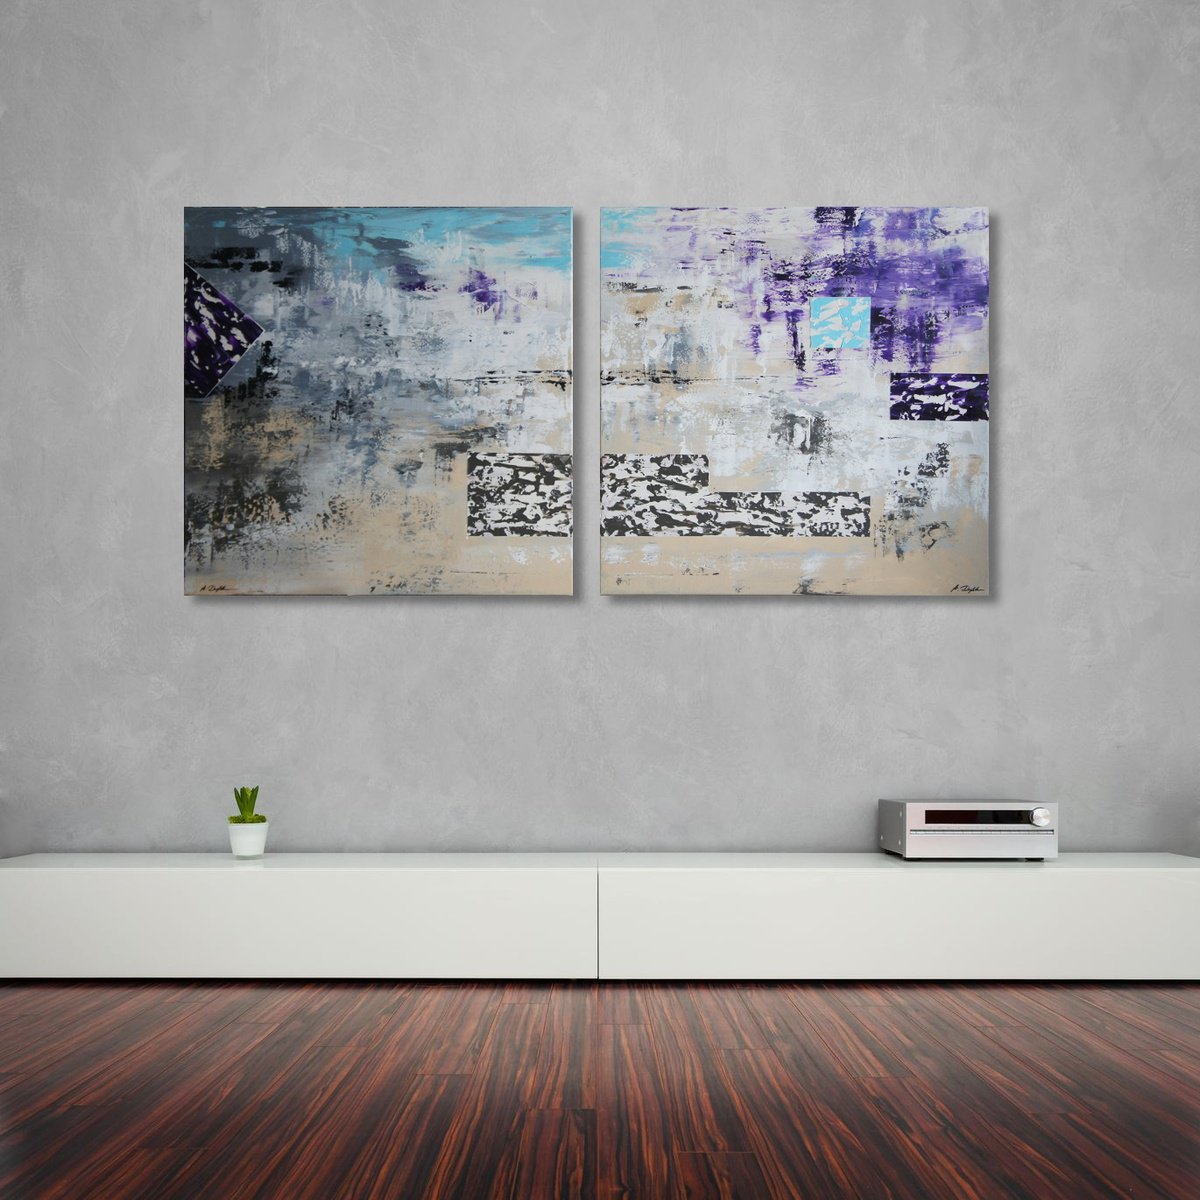 Haze (165 x 80 cm) XXL (66 x 32 inches) Diptych by Ansgar Dressler